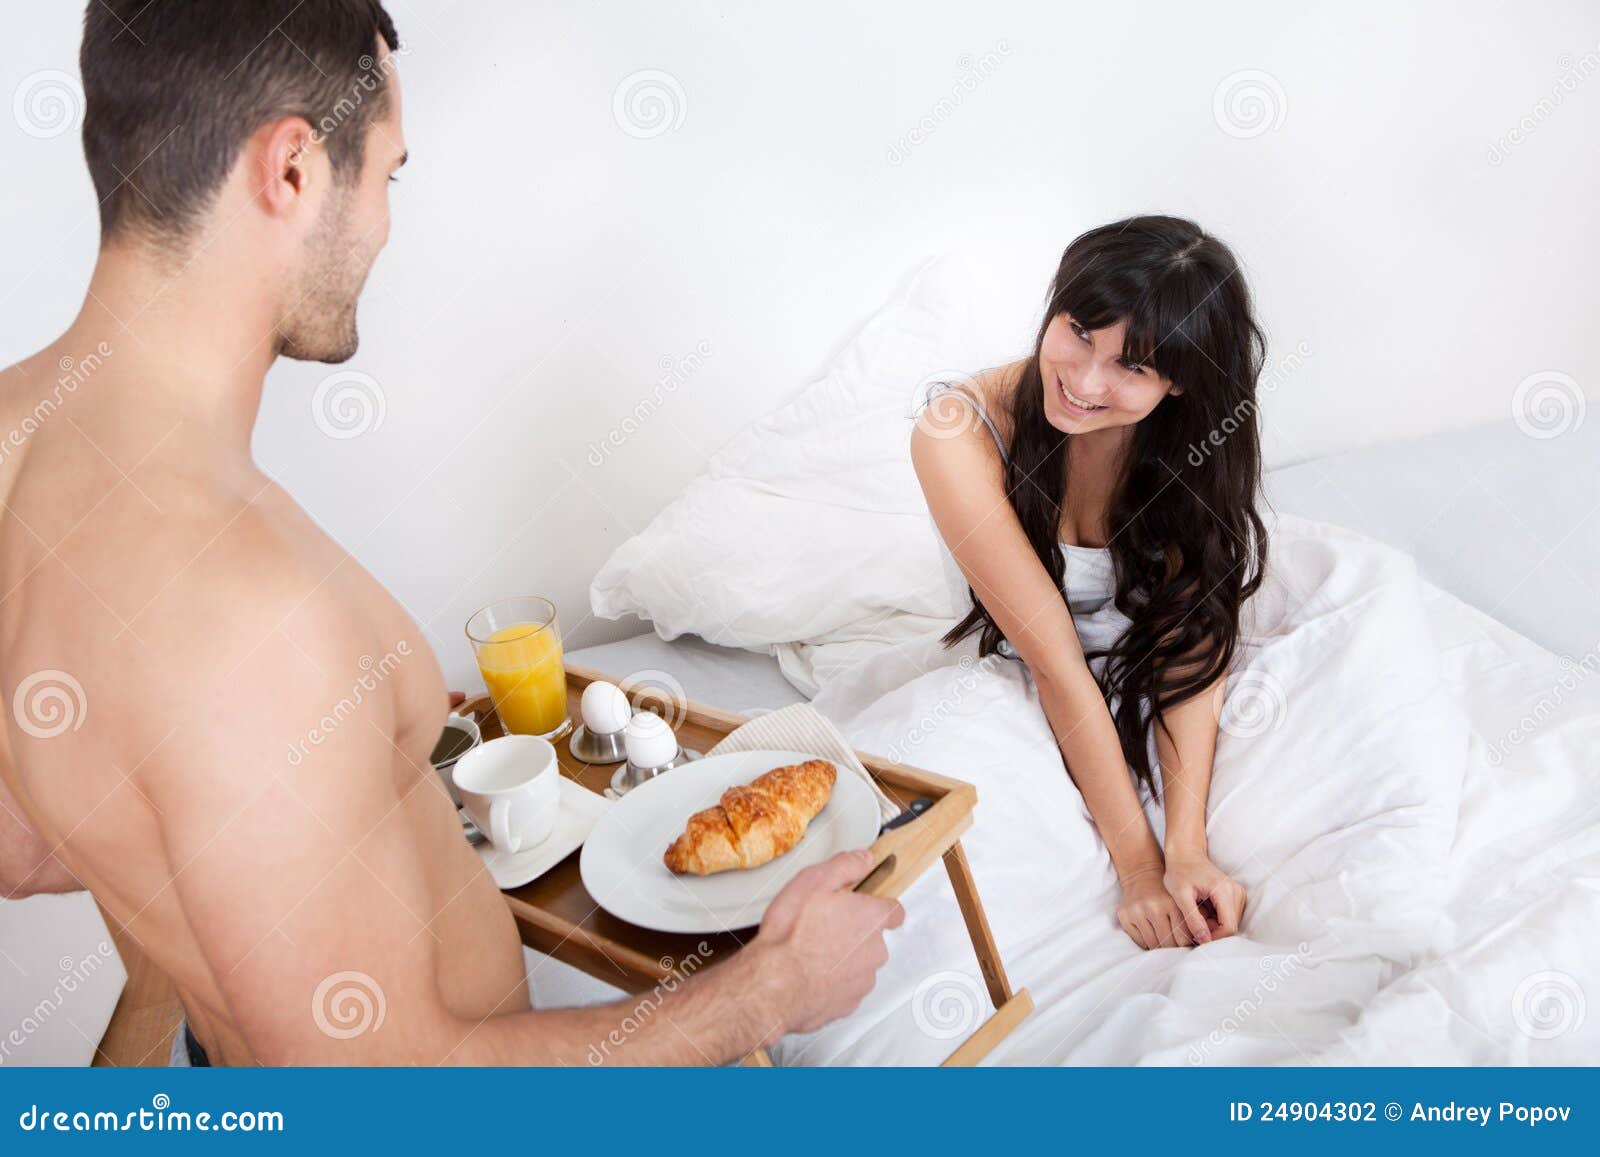 порно принес ей завтрак фото 35